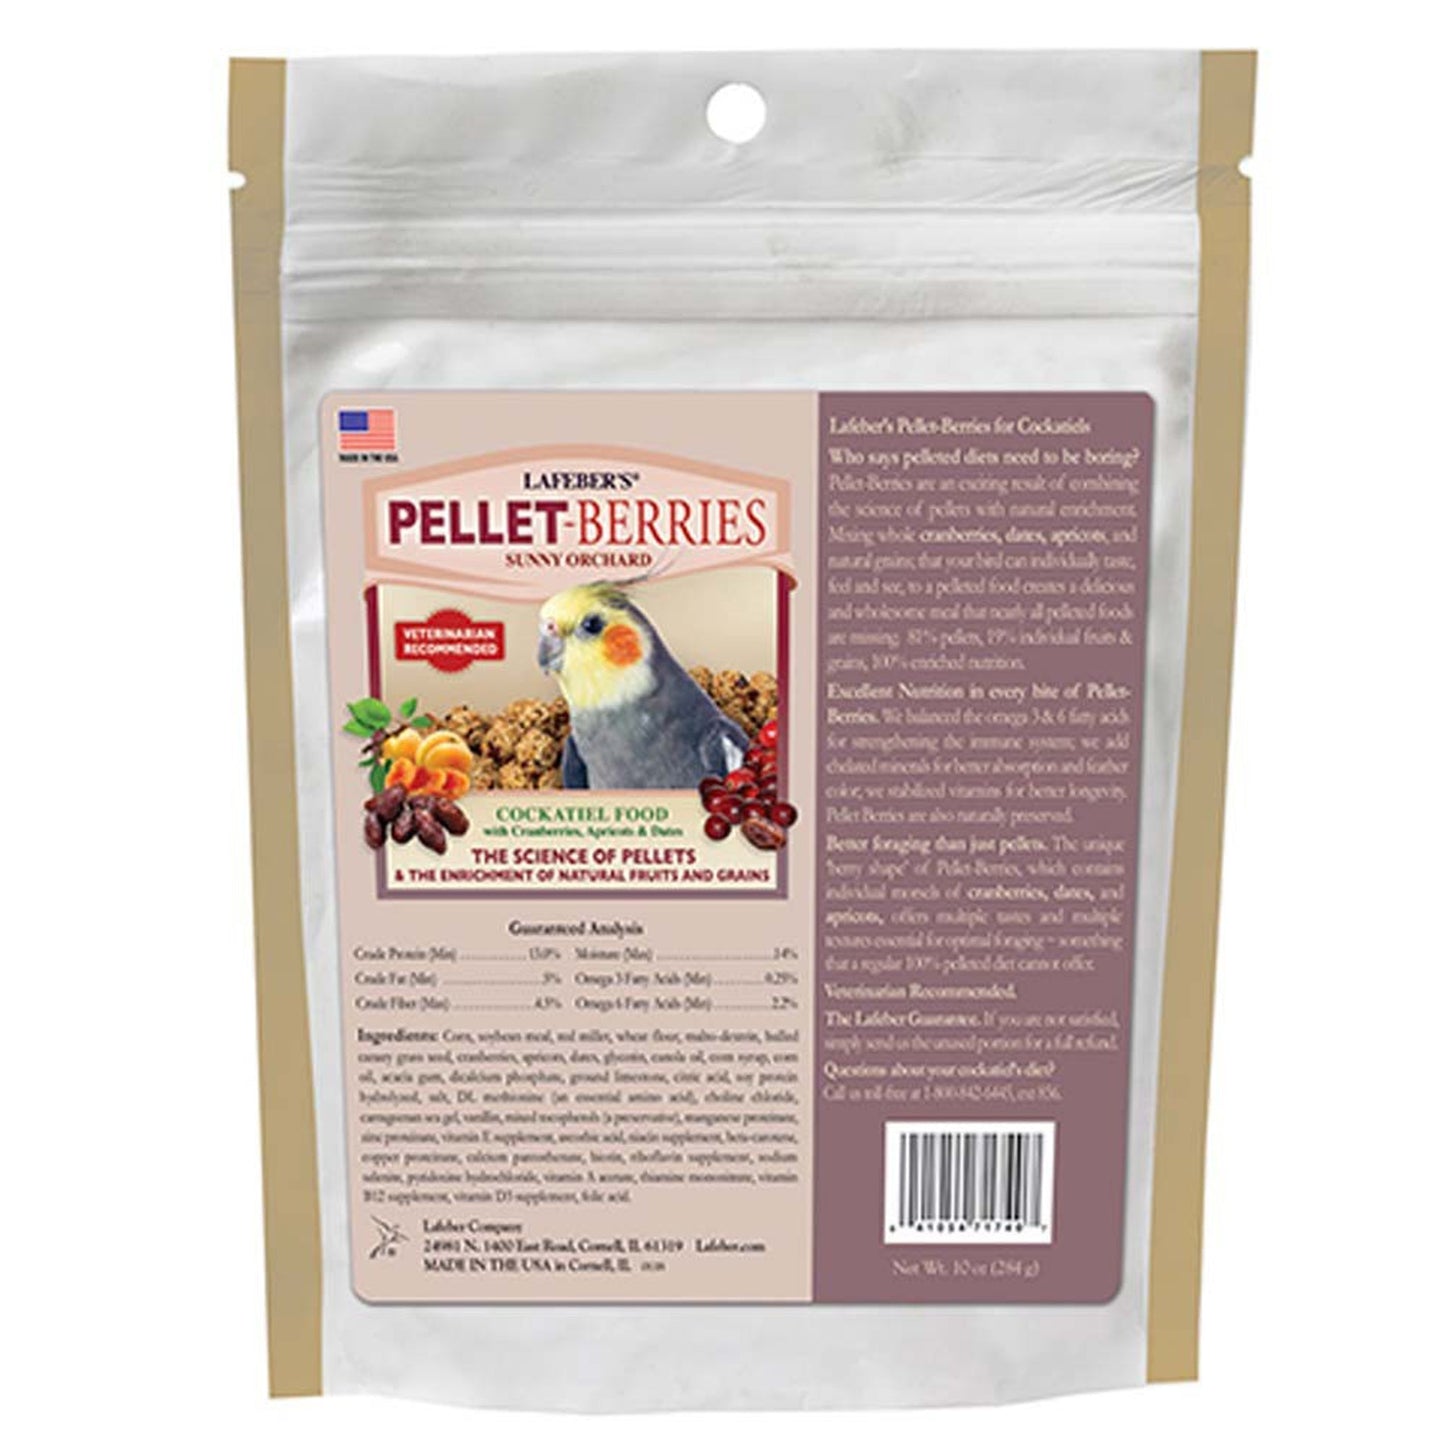 Lafeber Company Pellet-Berries Sunny Orchard Cockatiel Food 1ea/10 oz